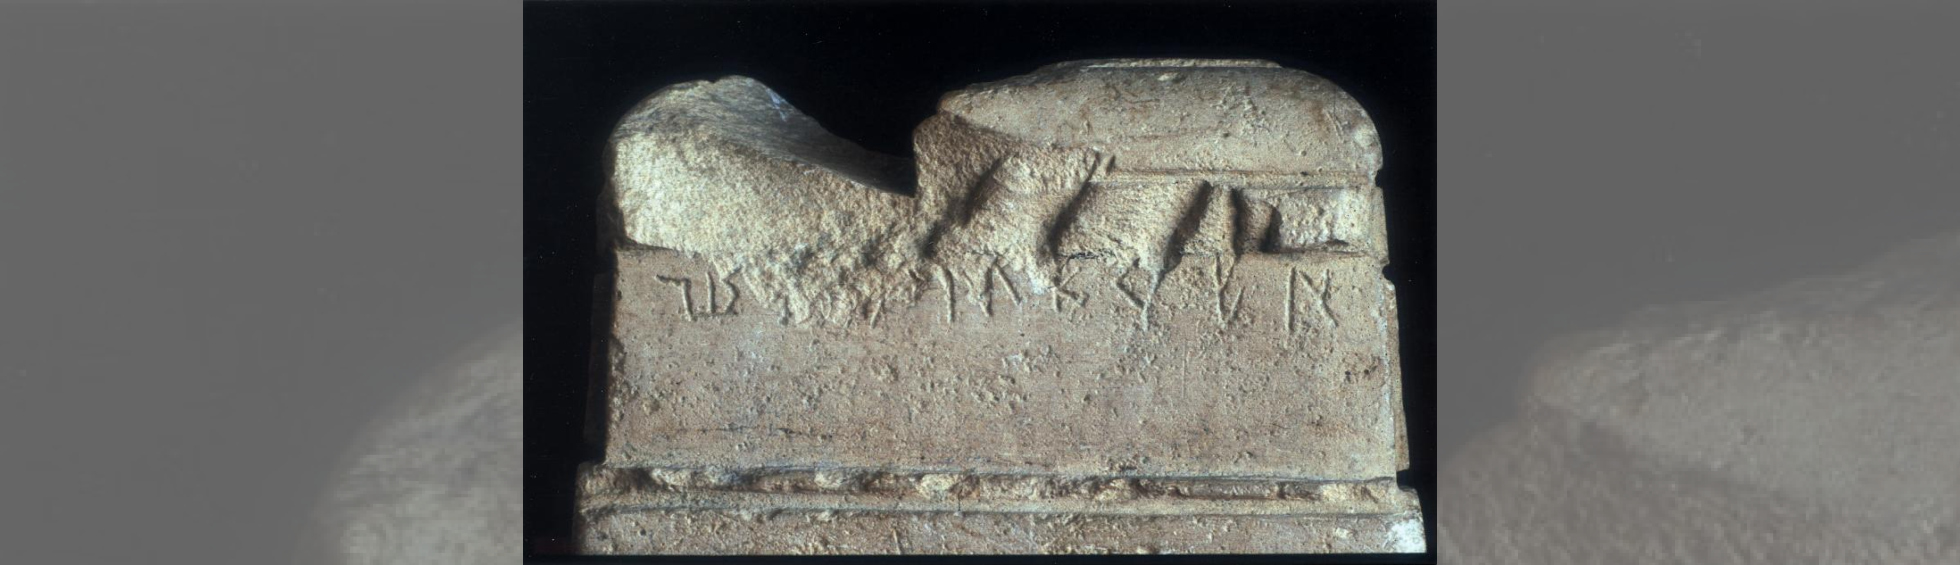 Bloc de pierre taillée faisant office de table d'autel avec une inscription ibere sur une face